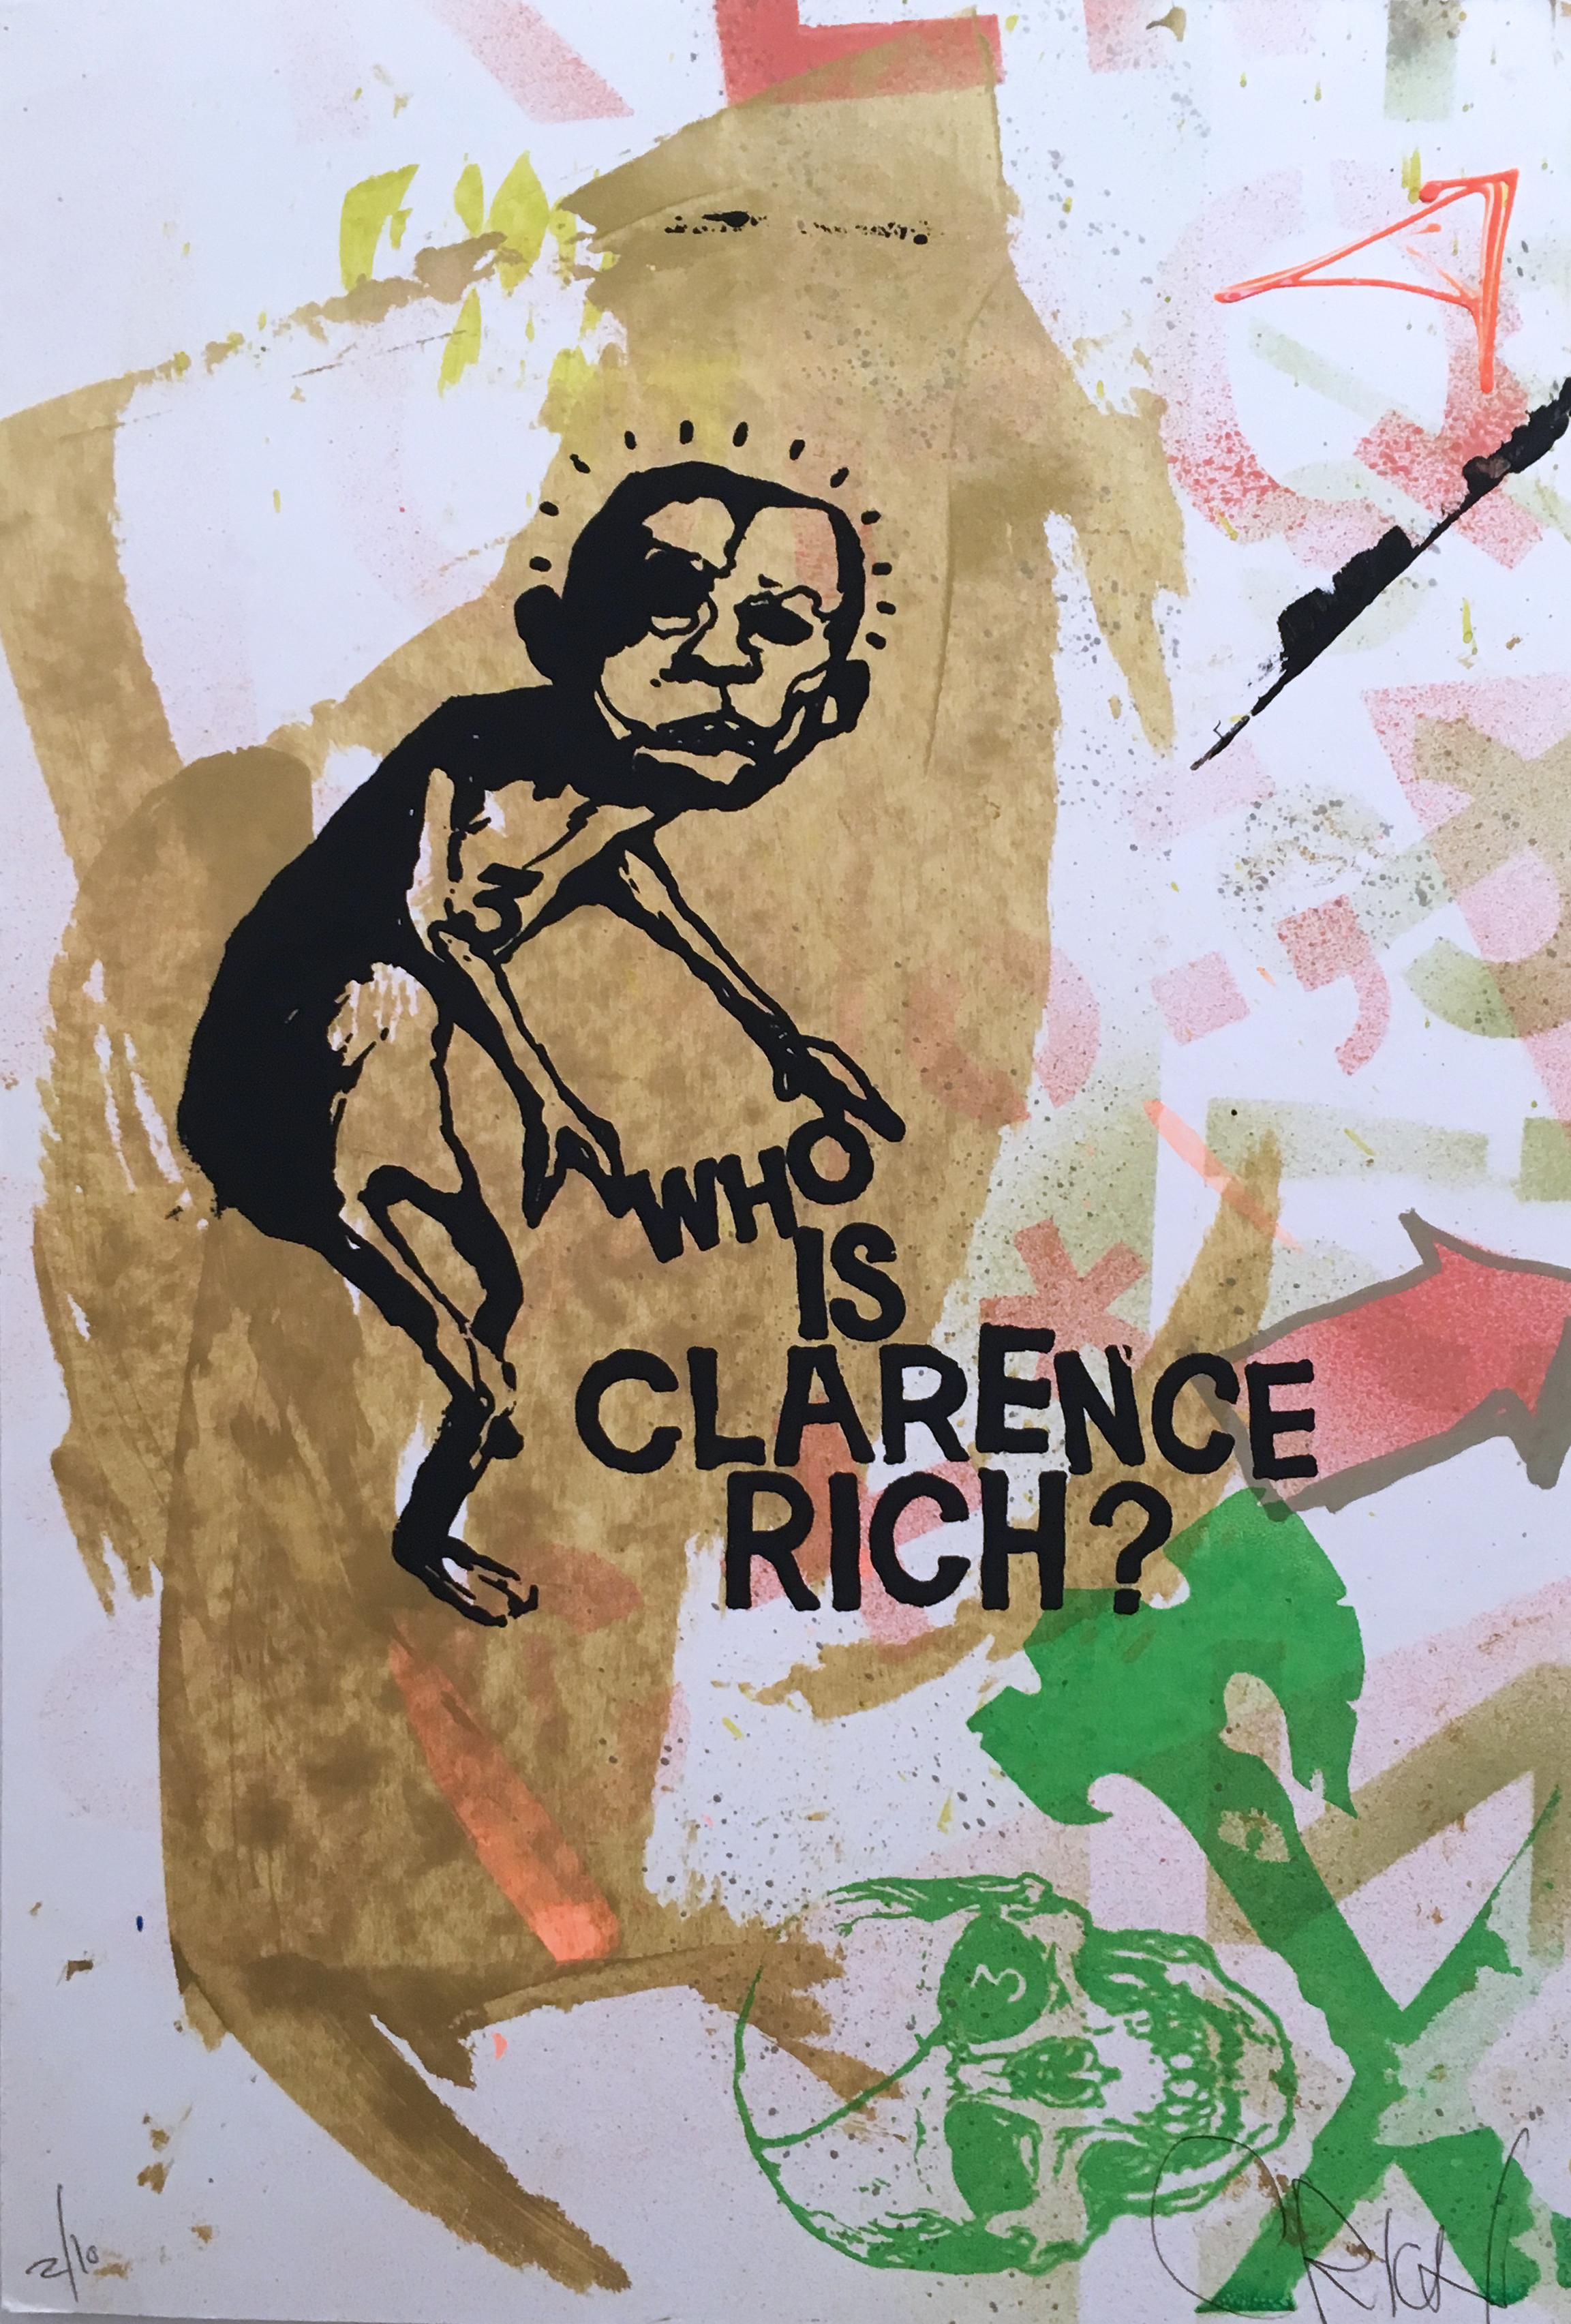 "Wer ist Clarence Rich" (2017) von Clarence Rich
Siebdruck, Acryl und Tinte auf Papier
Clarence Rich ist ein 25-jähriger Graffiti-Veteran und Straßenkünstler, der auch ein ausgebildeter Maler ist. 

Abstrakte Kunst / Graffiti und Street Art / Text /